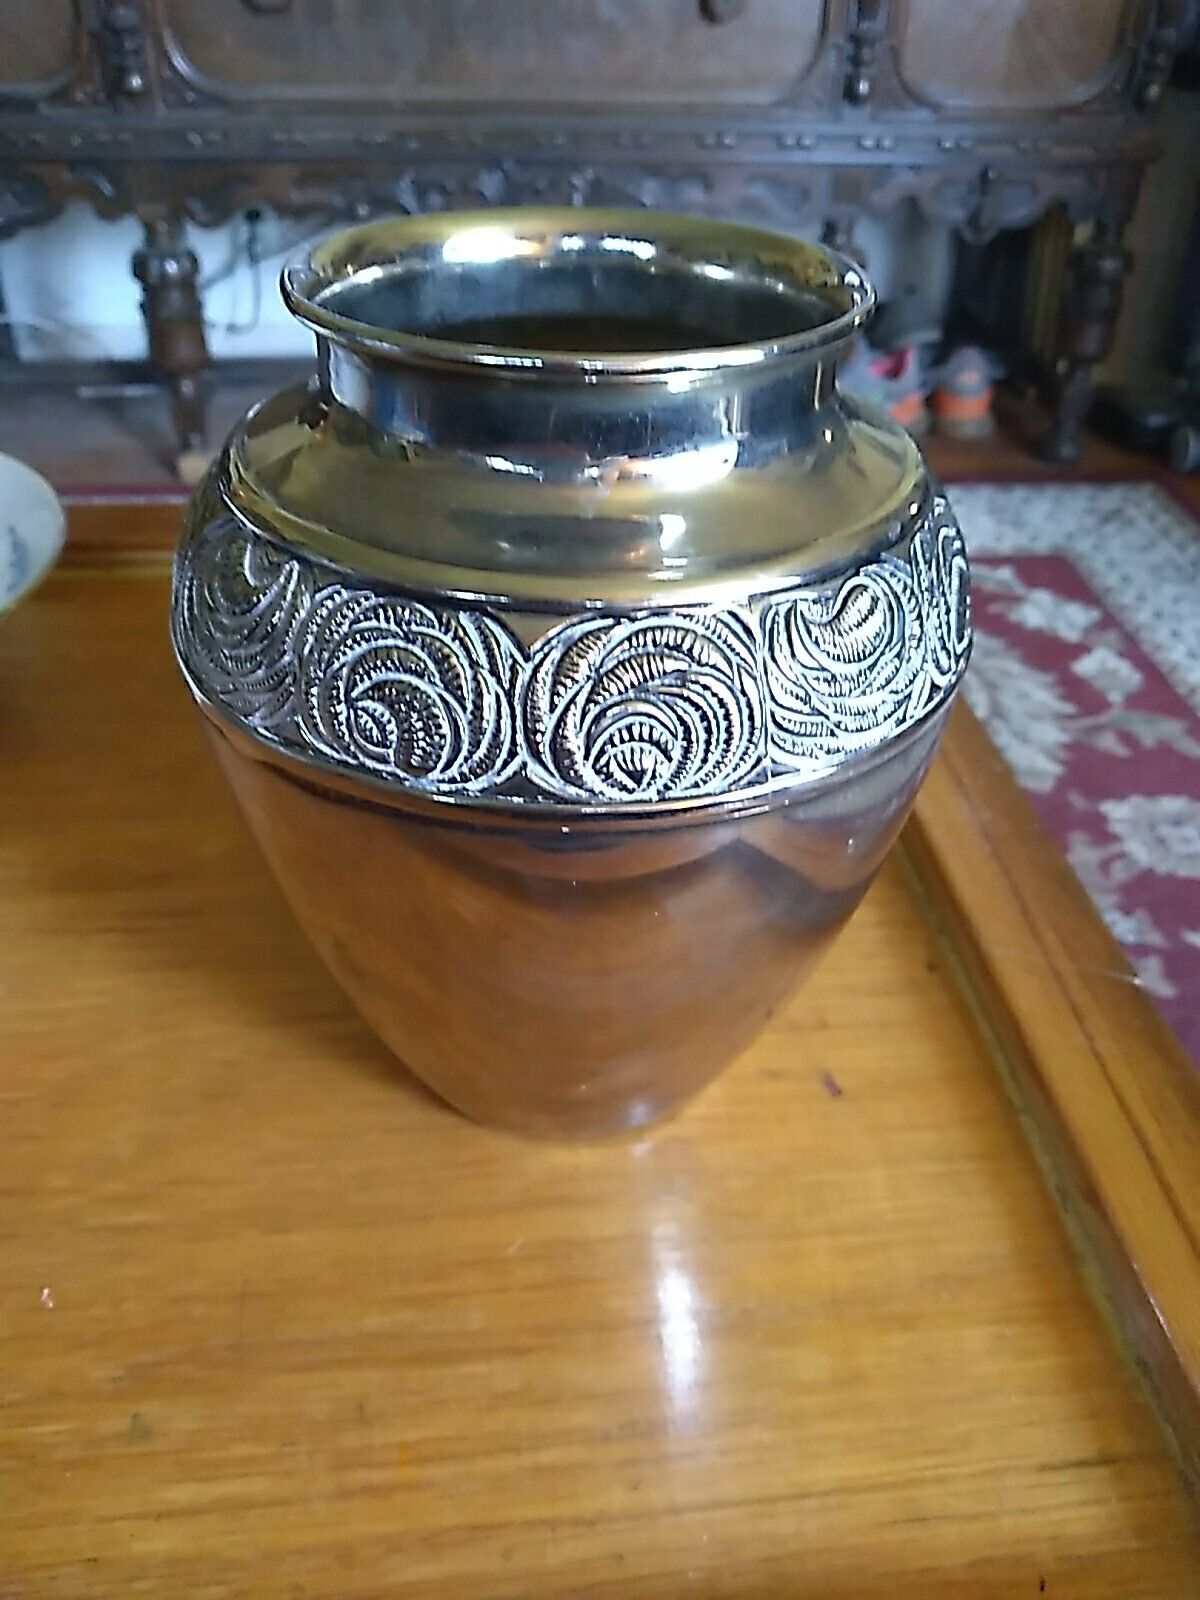 Silver Plate Urn Vase